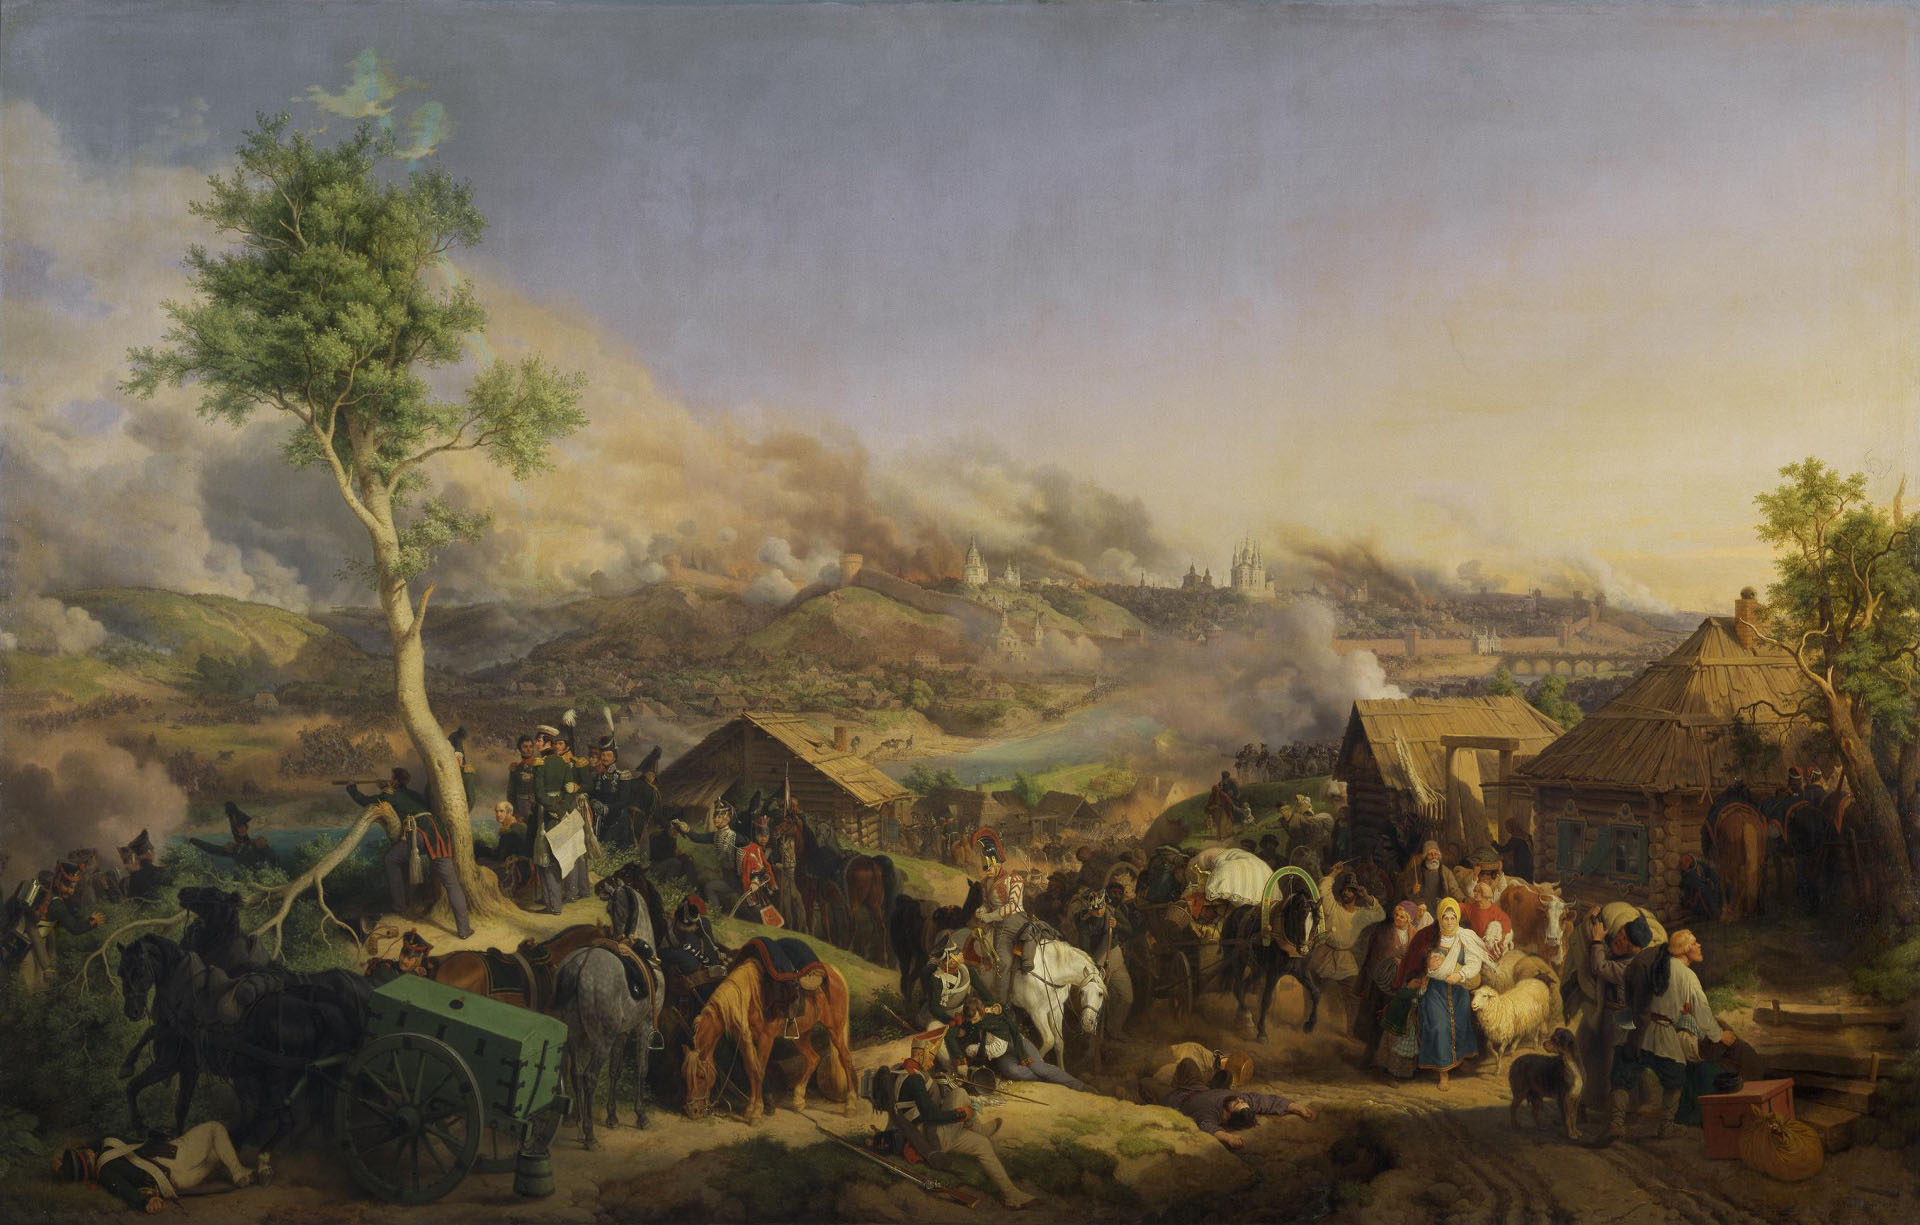 Петер фон Хесс (Гесс). "Сражение 5 (17) августа 1812 года под Смоленском". 1846. Эрмитаж, Санкт-Петербург.